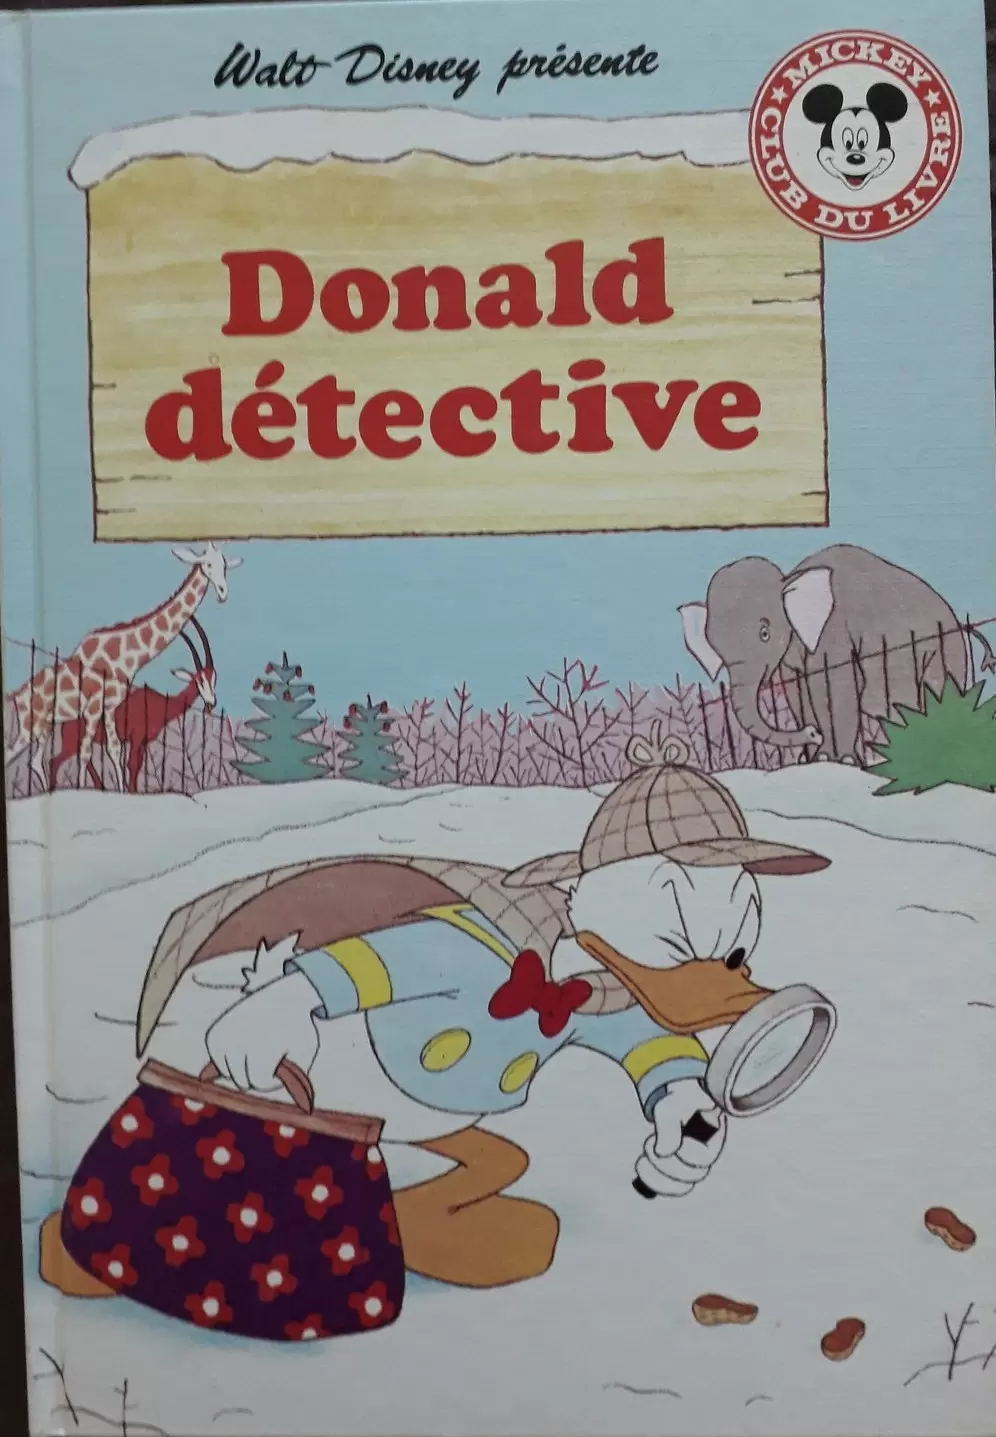 Mickey Club du Livre - Donald détective